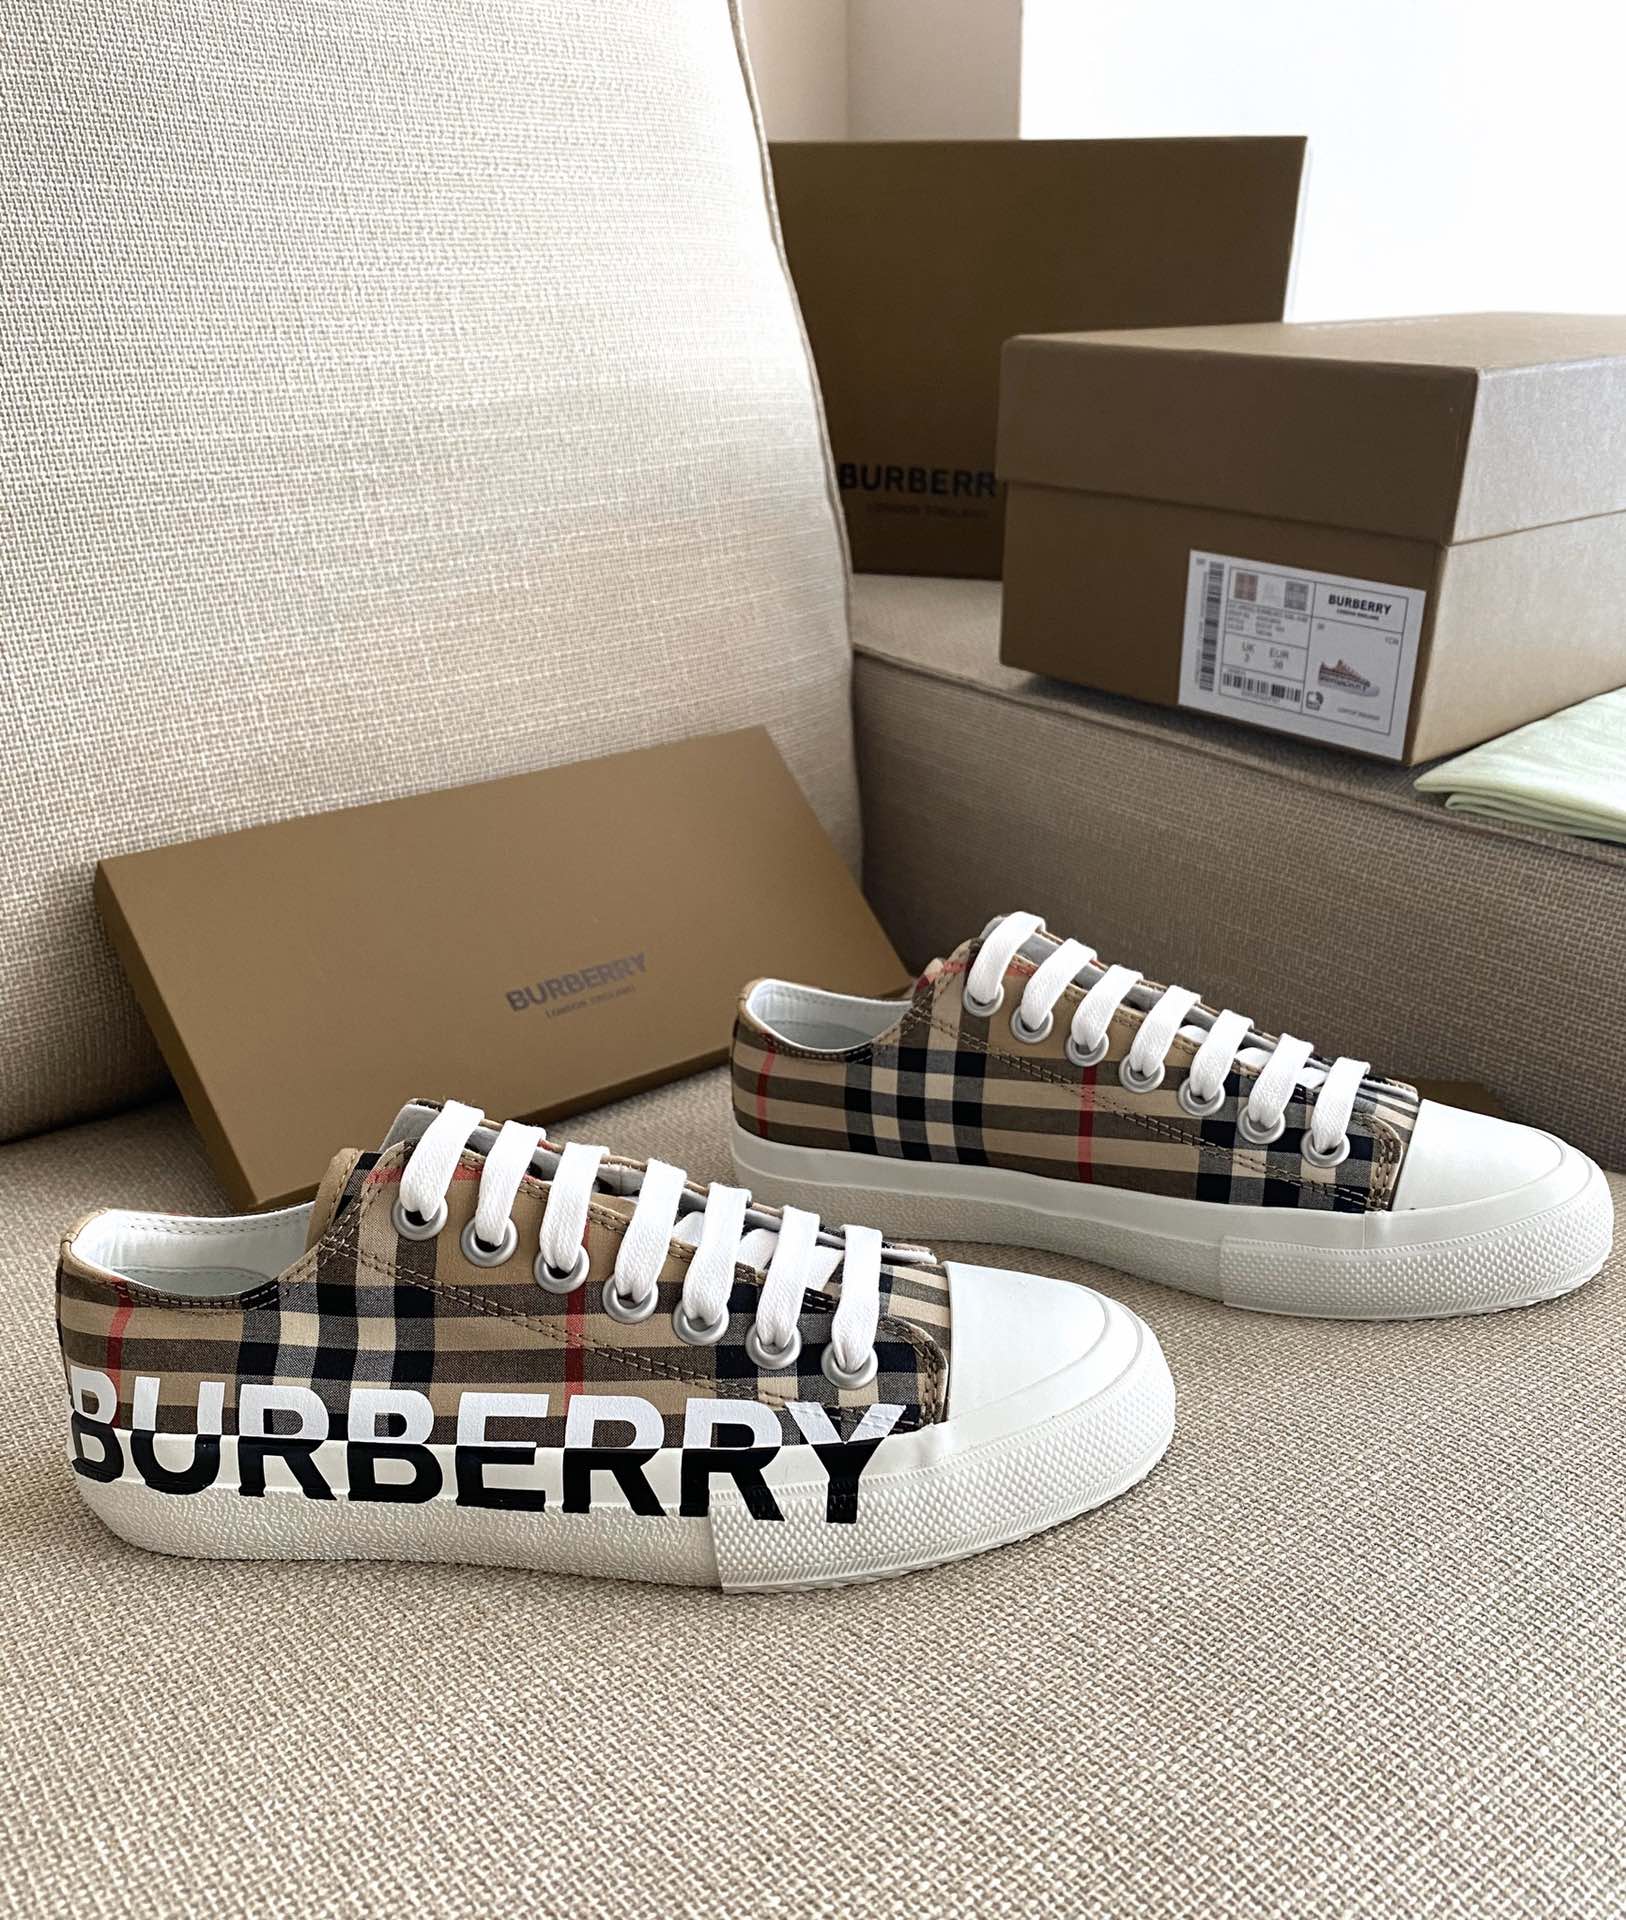 Giày Sneakers Burberry - Fullsize (size nam và nữ)